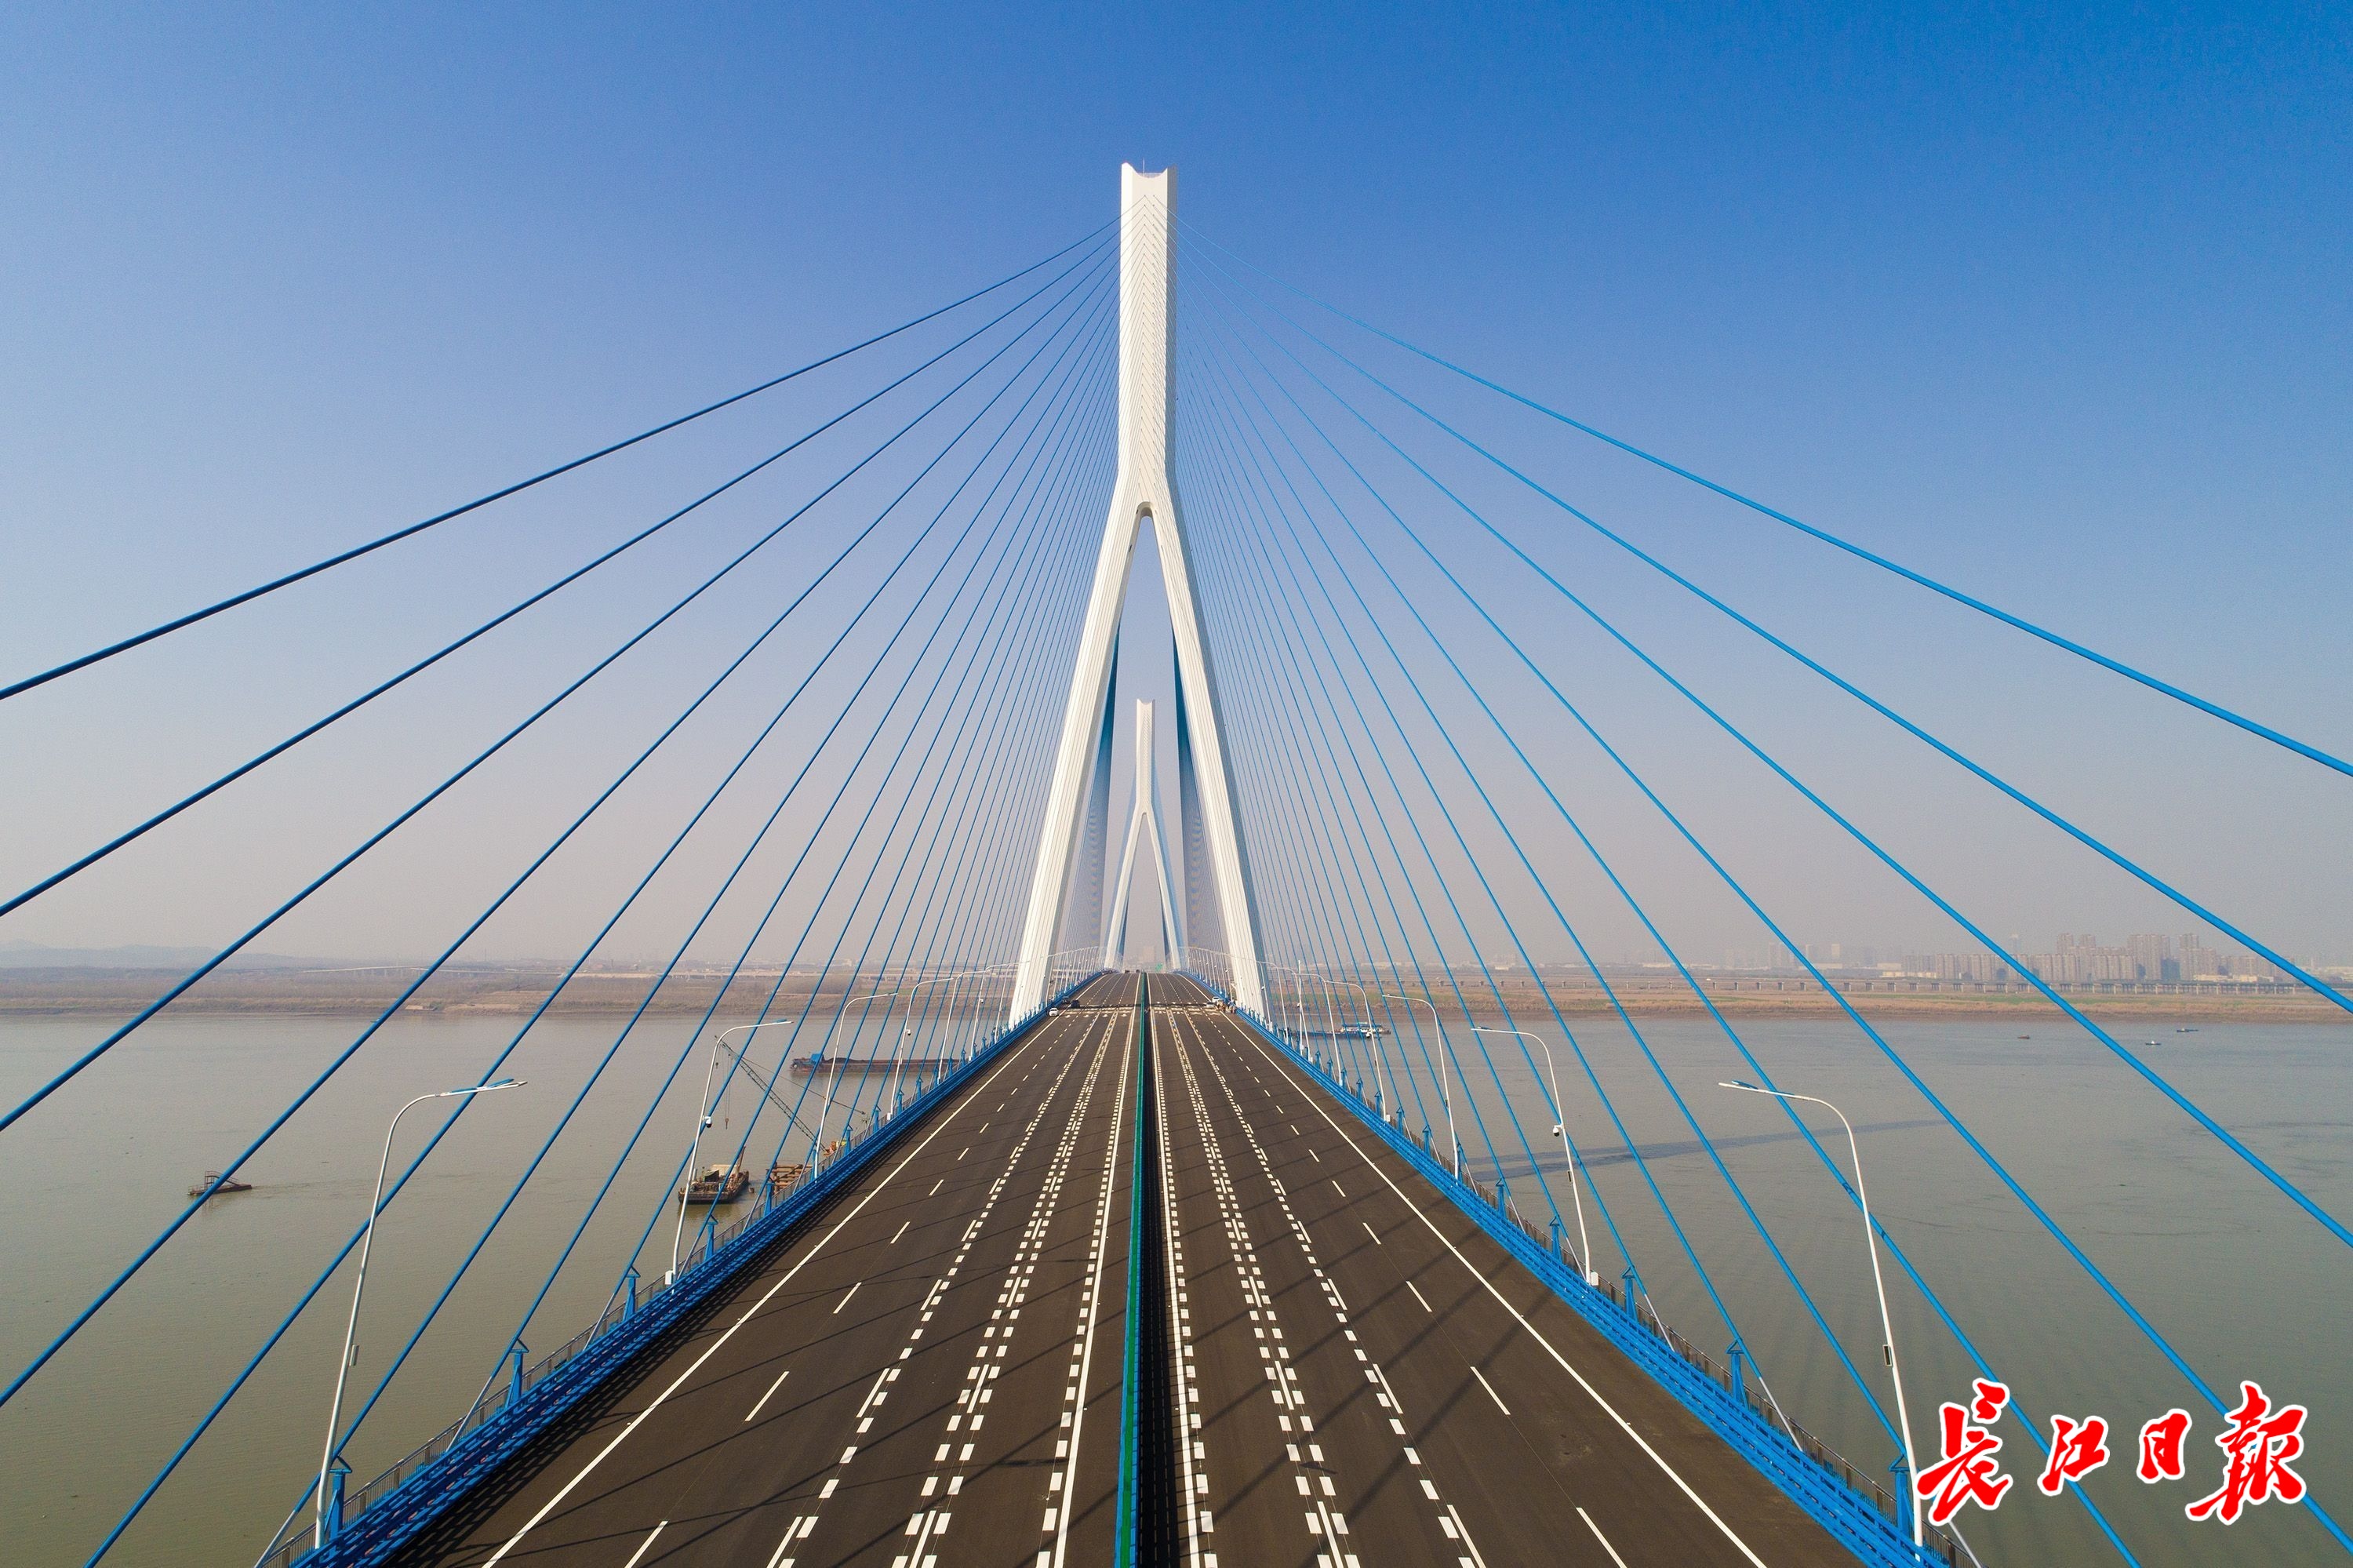 武汉最美大桥特别能扛重,上走汽车下跑火车的天兴洲长江大桥都比